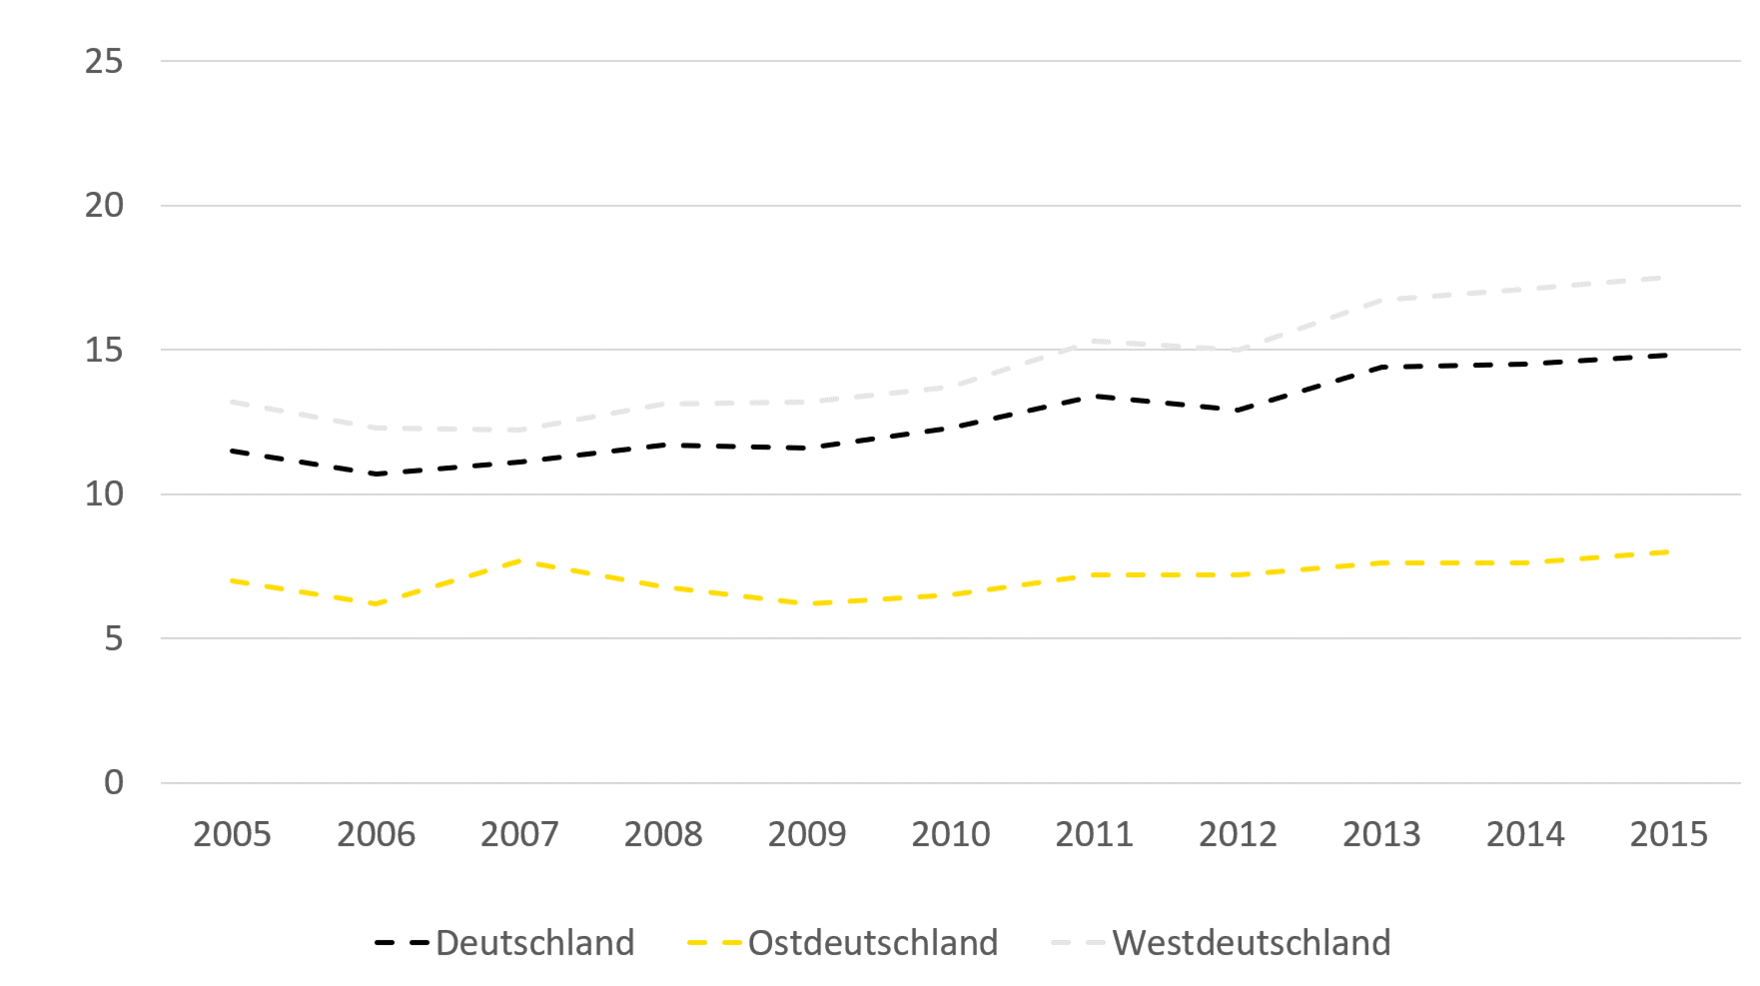 Die Entwicklung der Anteile der Pflegebedürftigen in Privathaushalten unter der Armutsgefährdungsschwelle (60 Prozent) verlief relativ konstant in Ostdeutschland mit 7 Prozent in 2005 und 8 Prozent in 2015. In Gesamtdeutschland stieg der Anteil von 11,5 Prozent auf 15 Prozent, in Westdeutschland stieg der Anteil von 13 Prozent auf 17,5 Prozent.